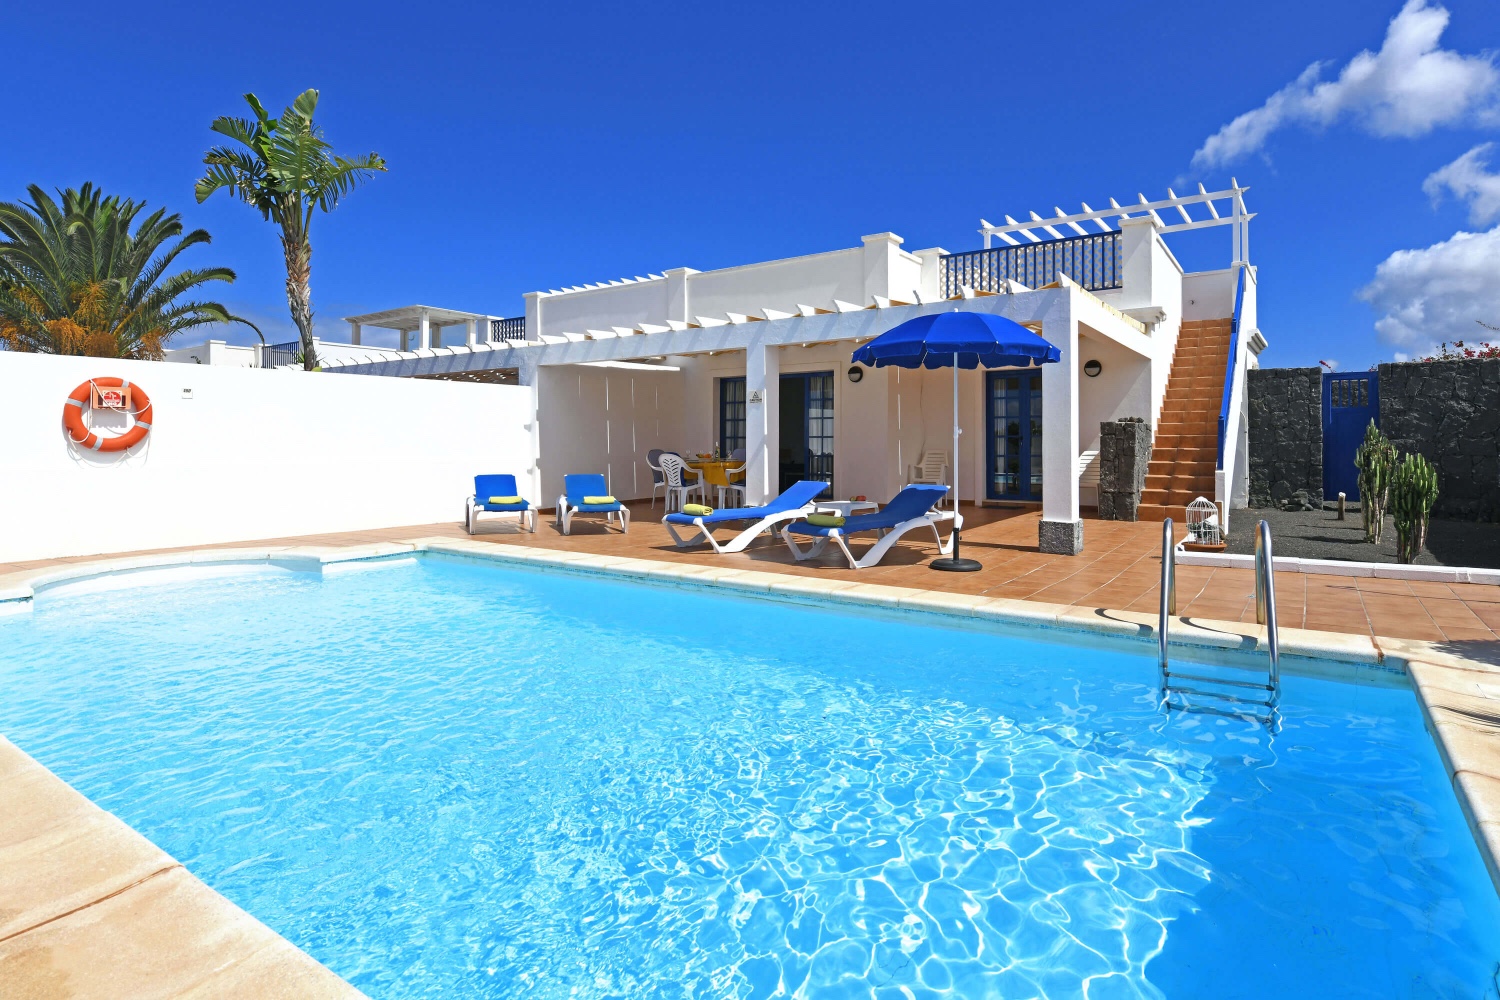 Stile marittimo per le vacanze e con piscina privata in una zona residenziale nei pressi della Playa Blanca